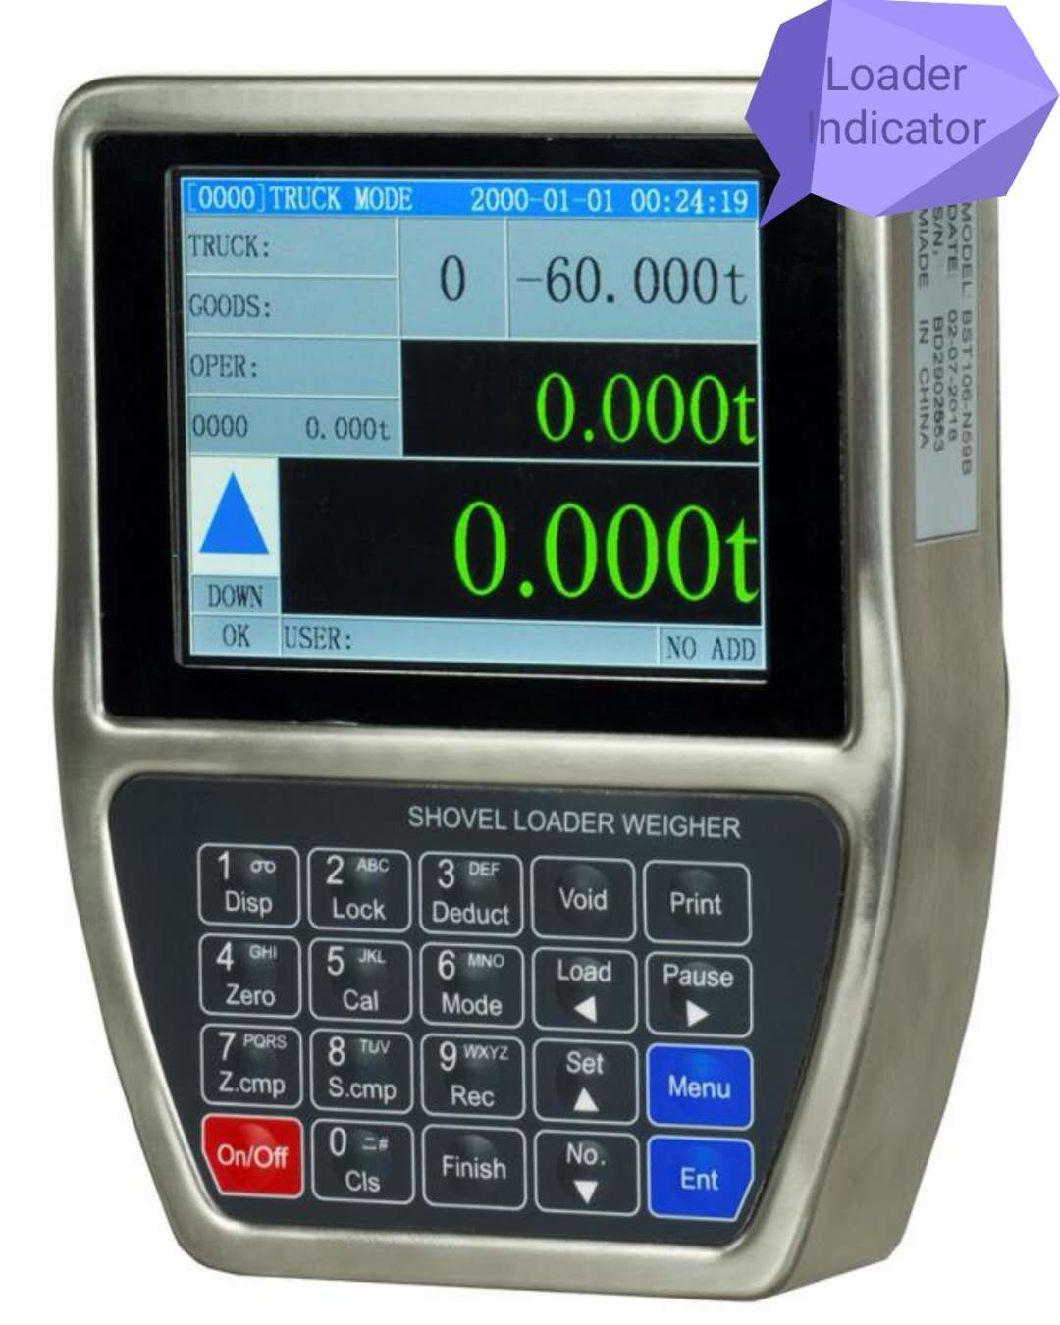 Supmeter Weighing Scales Shovel Loader Indicator for Volvo Wheel Loaders, Doosan Shovel Loader Scales, Bst106-N59